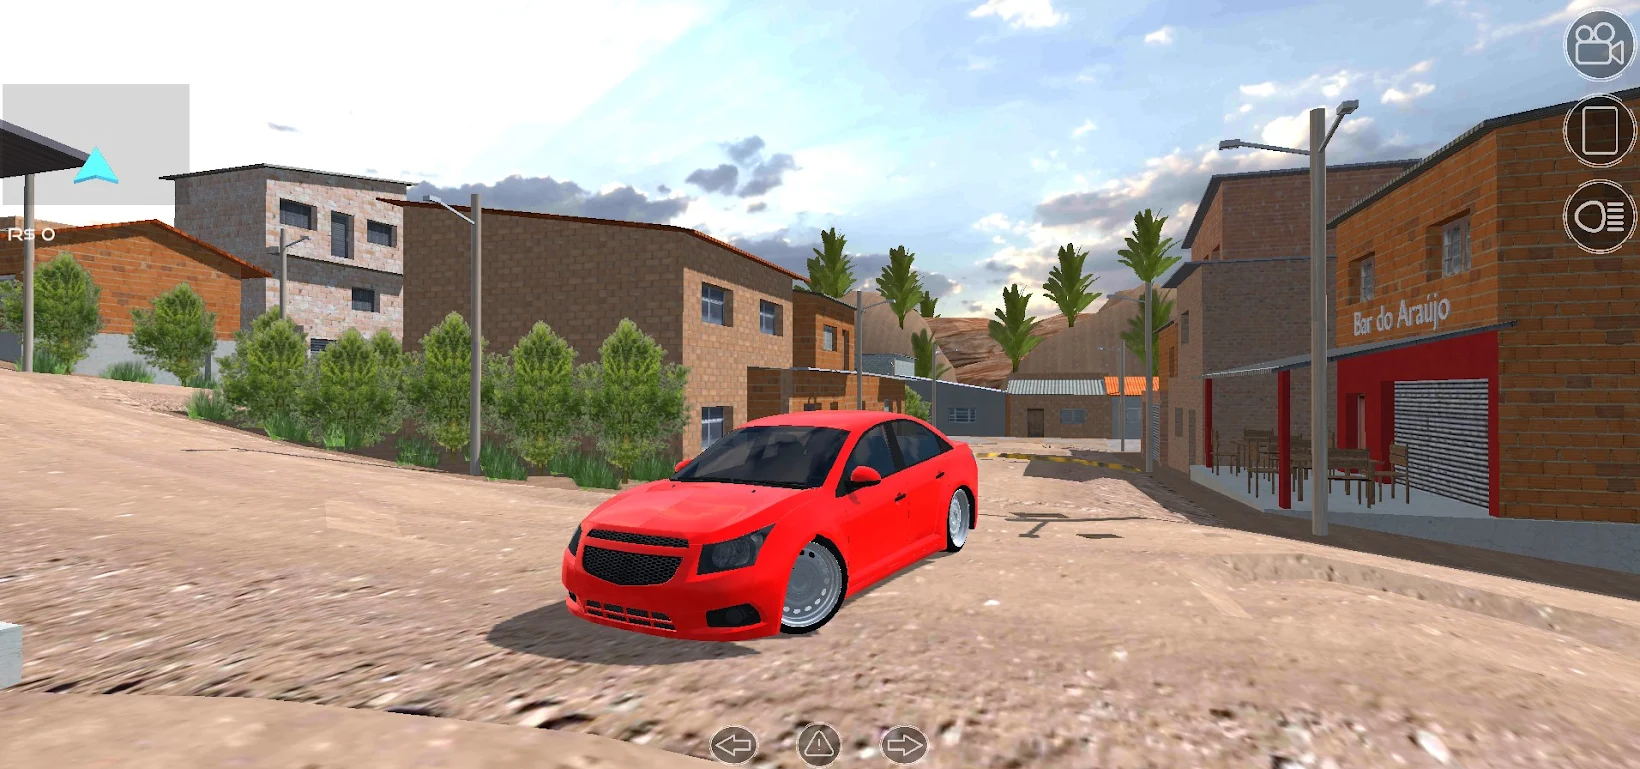 巴西城市模拟驾驶好玩吗 巴西城市模拟驾驶玩法简介